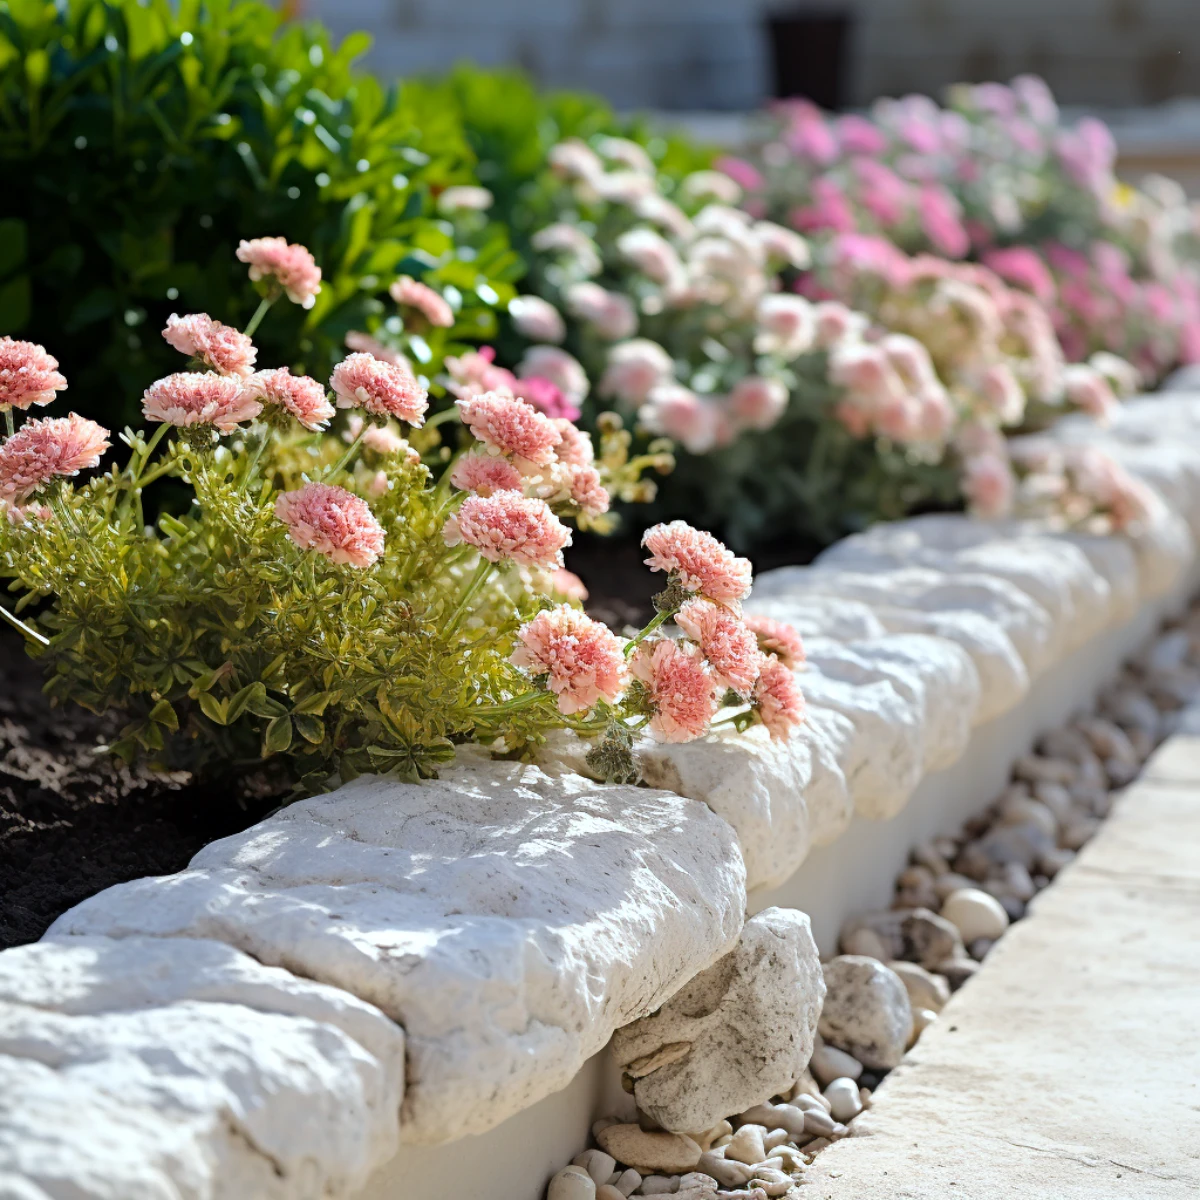 bordure de jardin calcaire fleurs roses feuilles vertes